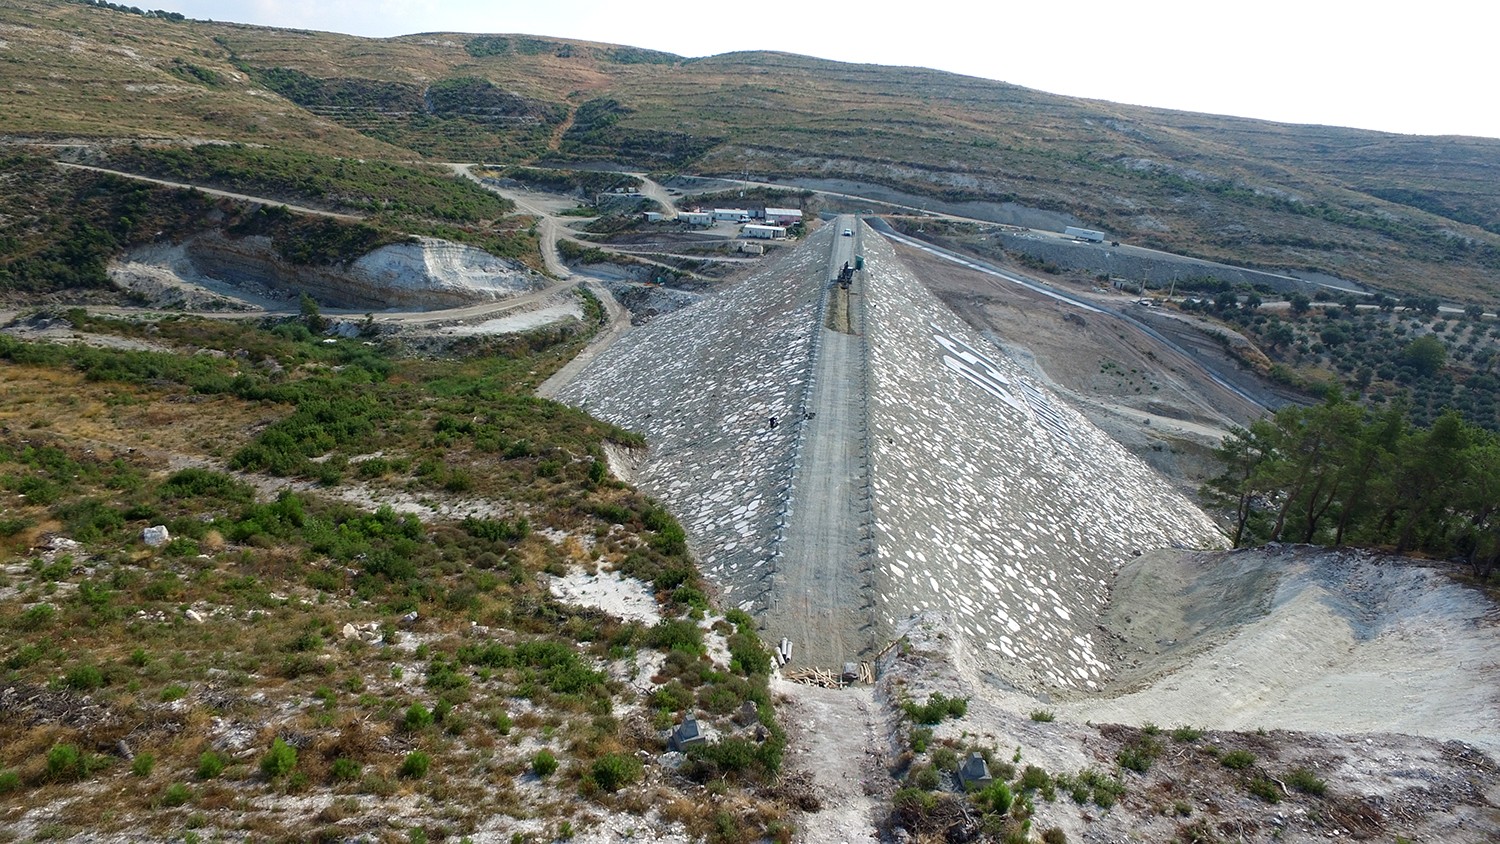 Belenyenice Barajında yıl sonunda su tutulmaya başlanacak